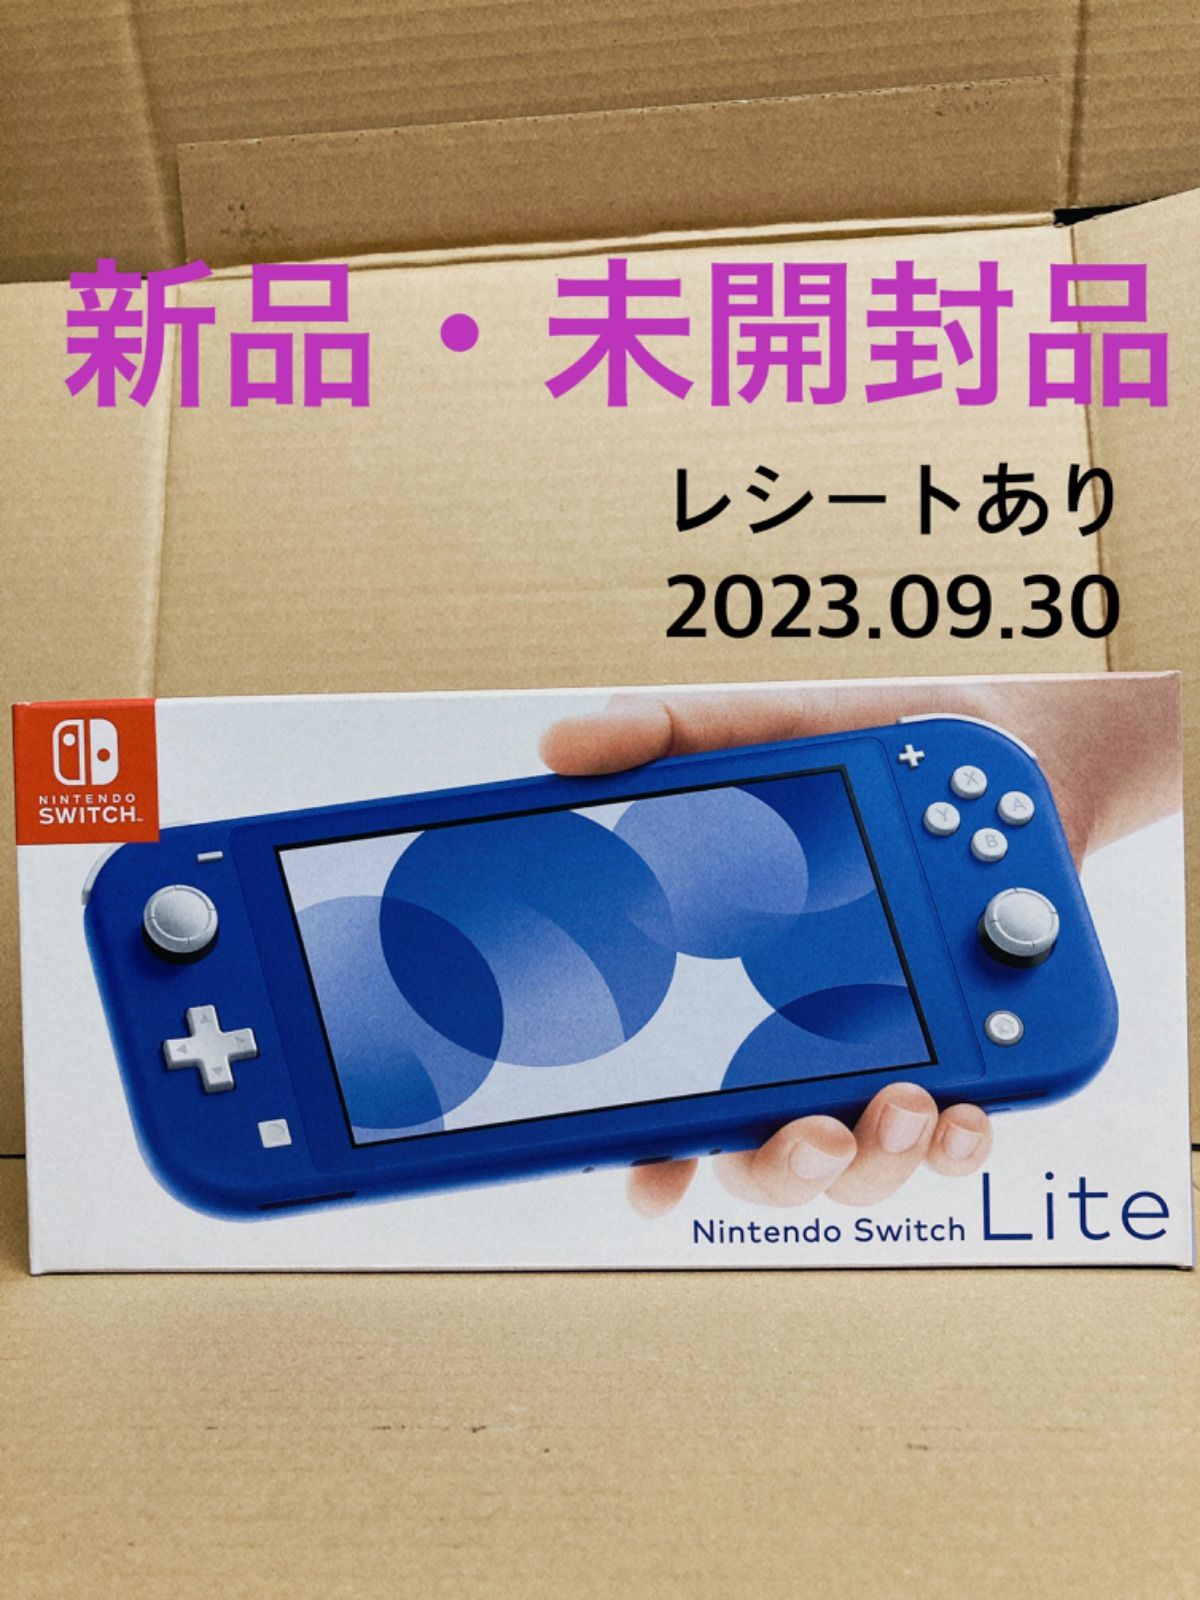 055【未開封品】Nintendo Switch Lite ブルー - メルカリ